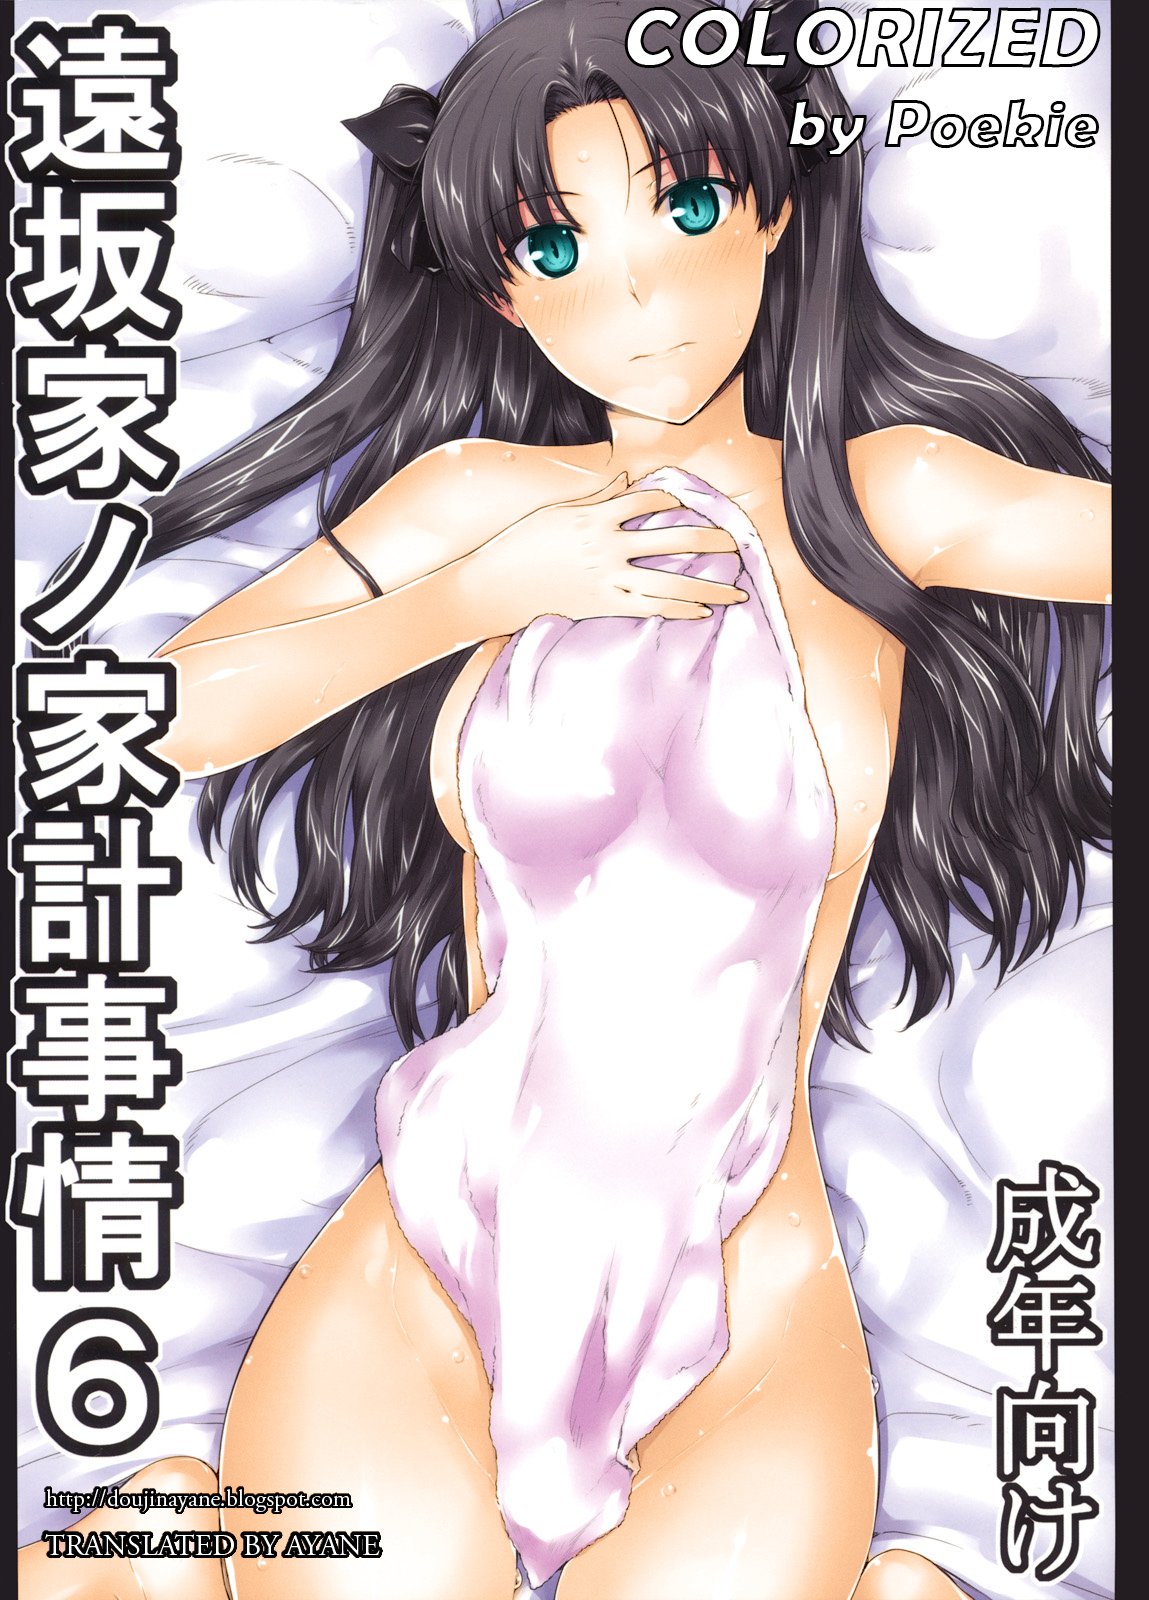 Rin tohsaka porn comics